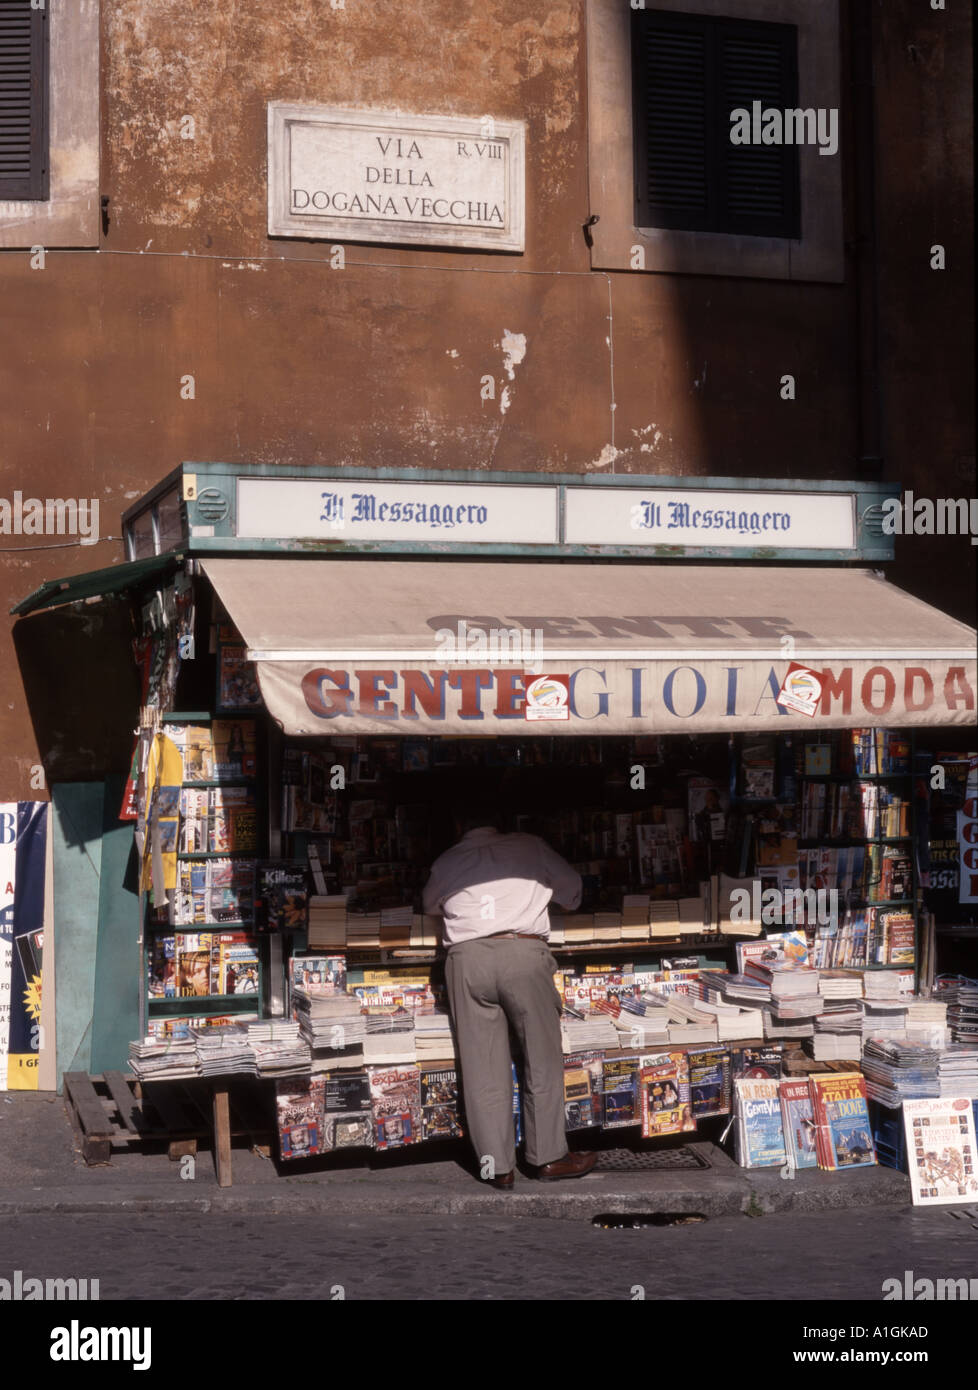 Rome, Lazio, Italy. Newspaper stand on Via Della Dogana Cecchia Stock Photo